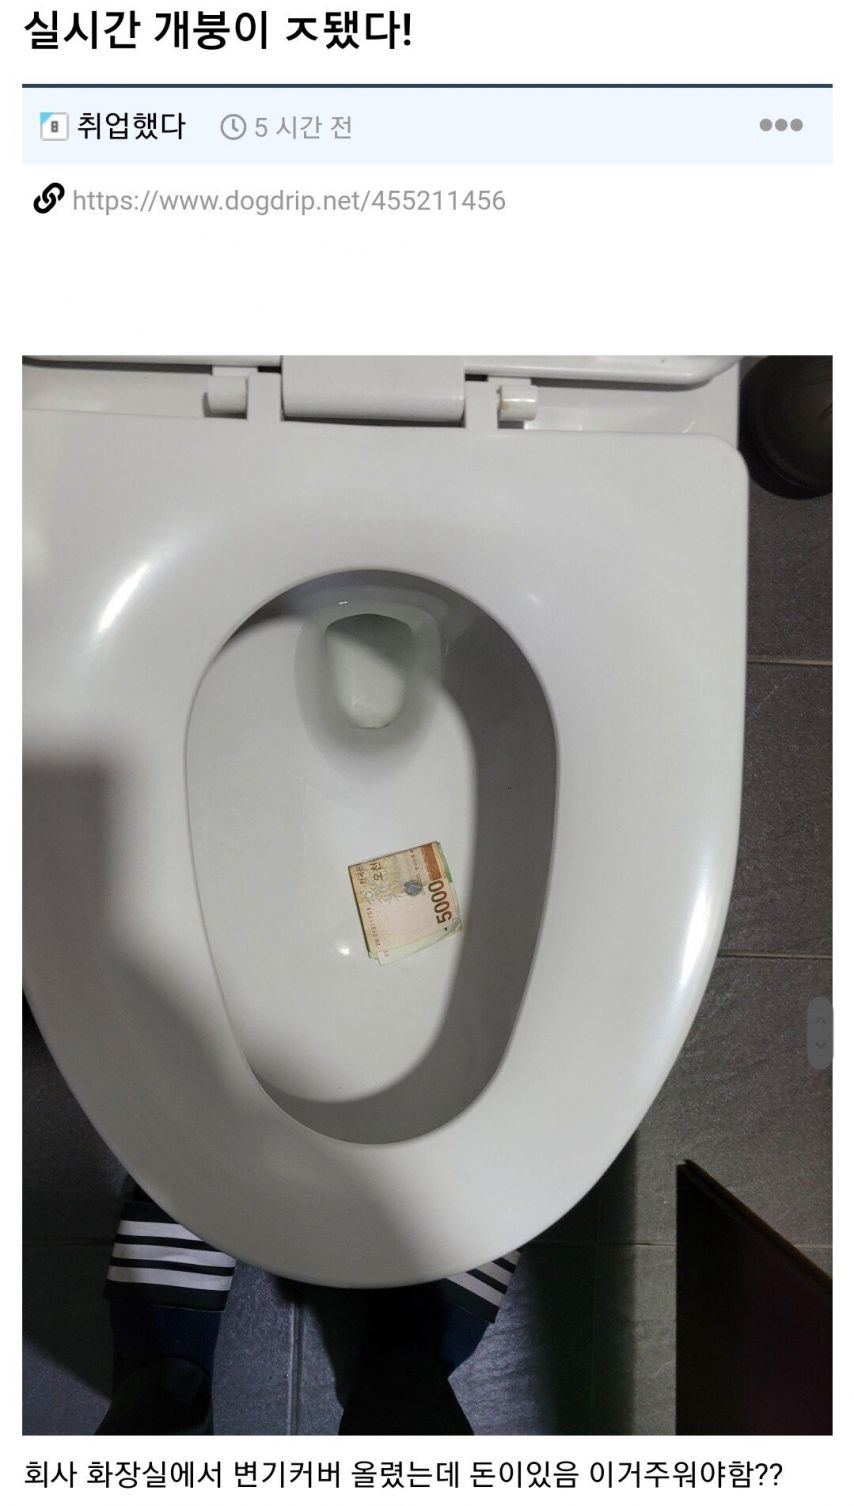 회사 화장실에서 변기커버 올렸는데 돈이있다면?